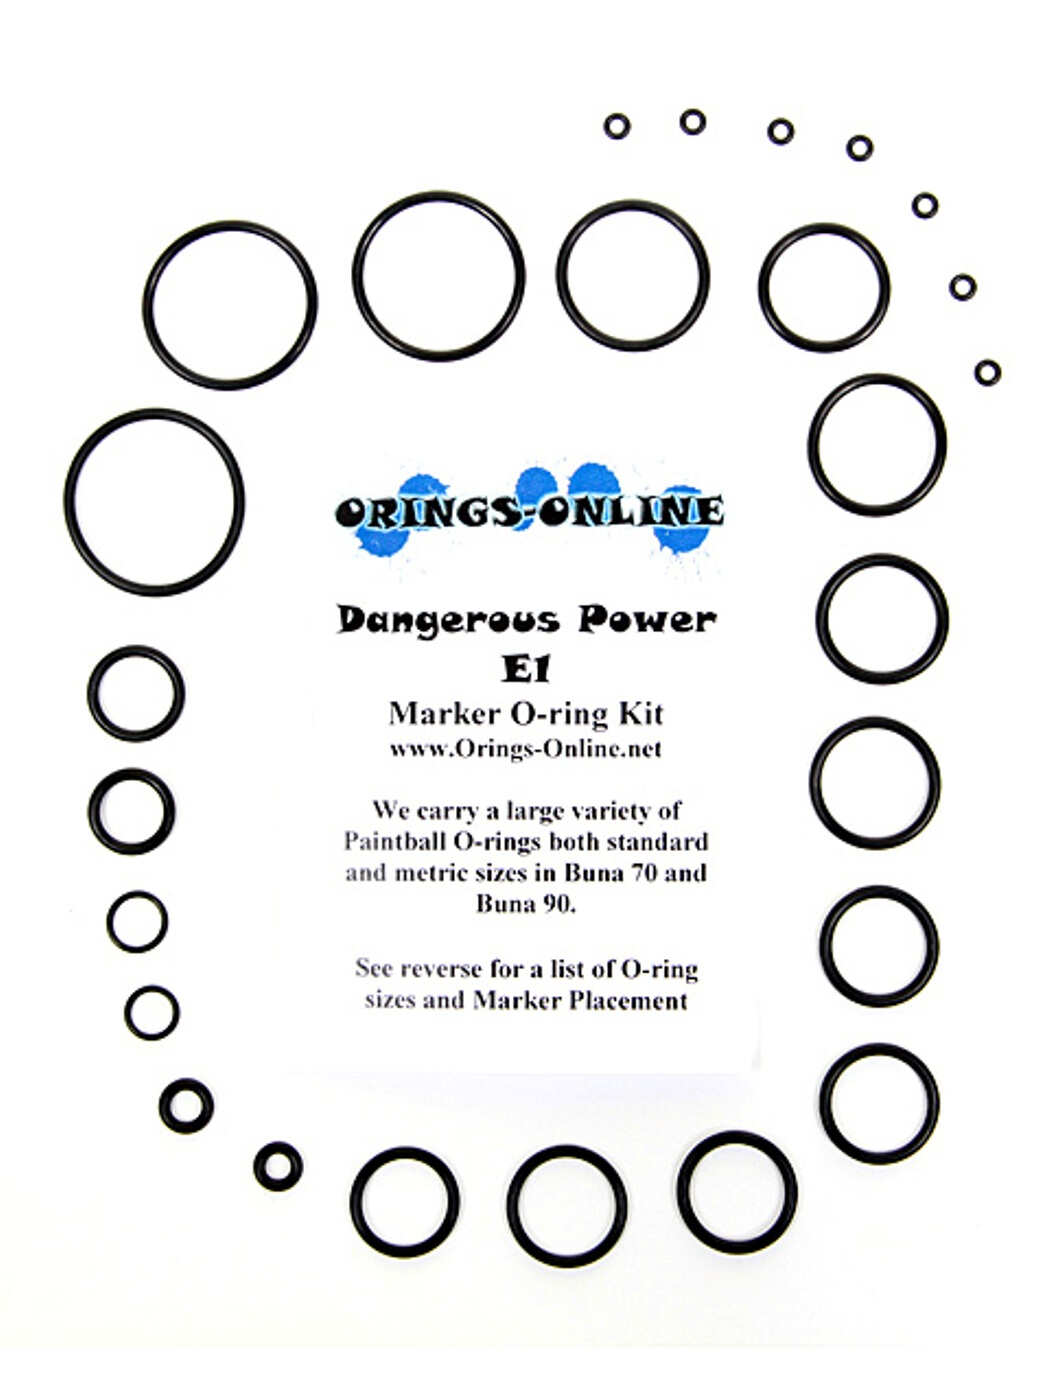 Dangerous Power E1 Marker O-ring Kit